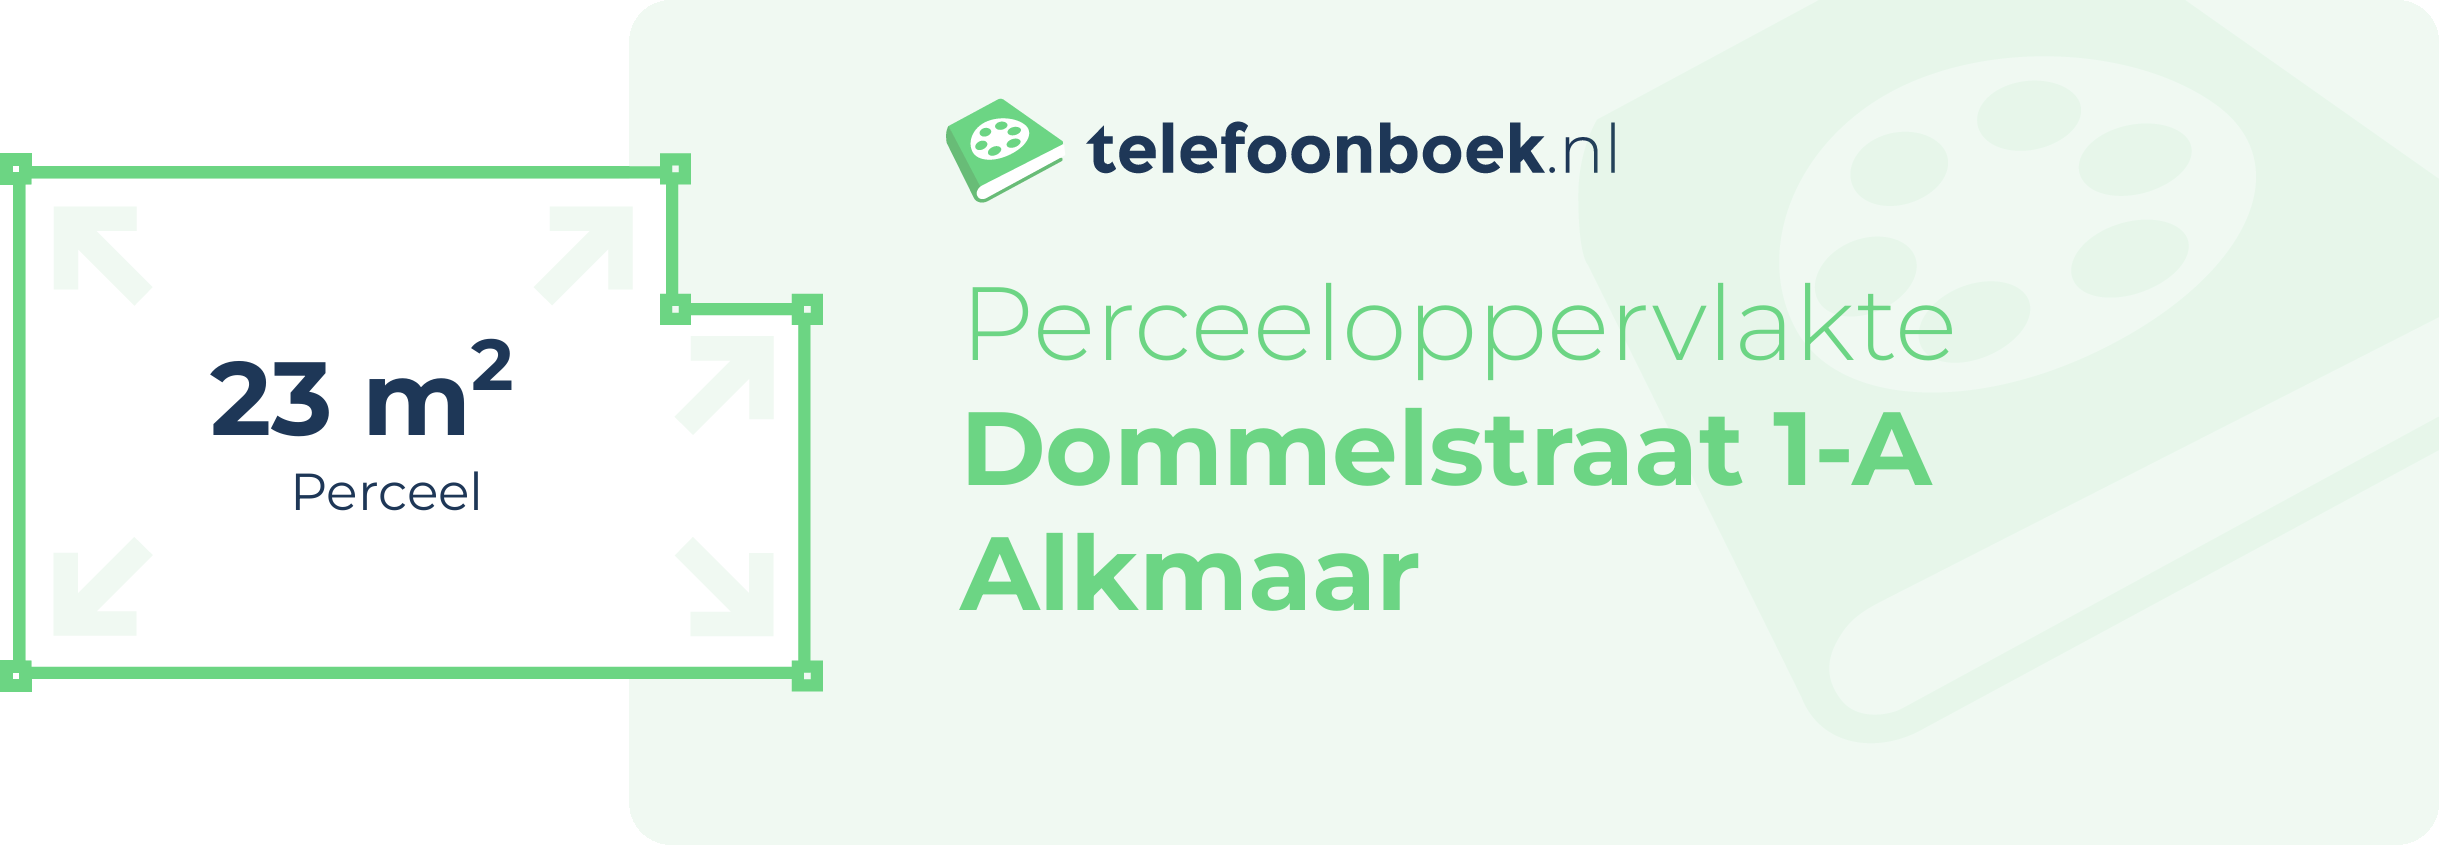 Perceeloppervlakte Dommelstraat 1-A Alkmaar